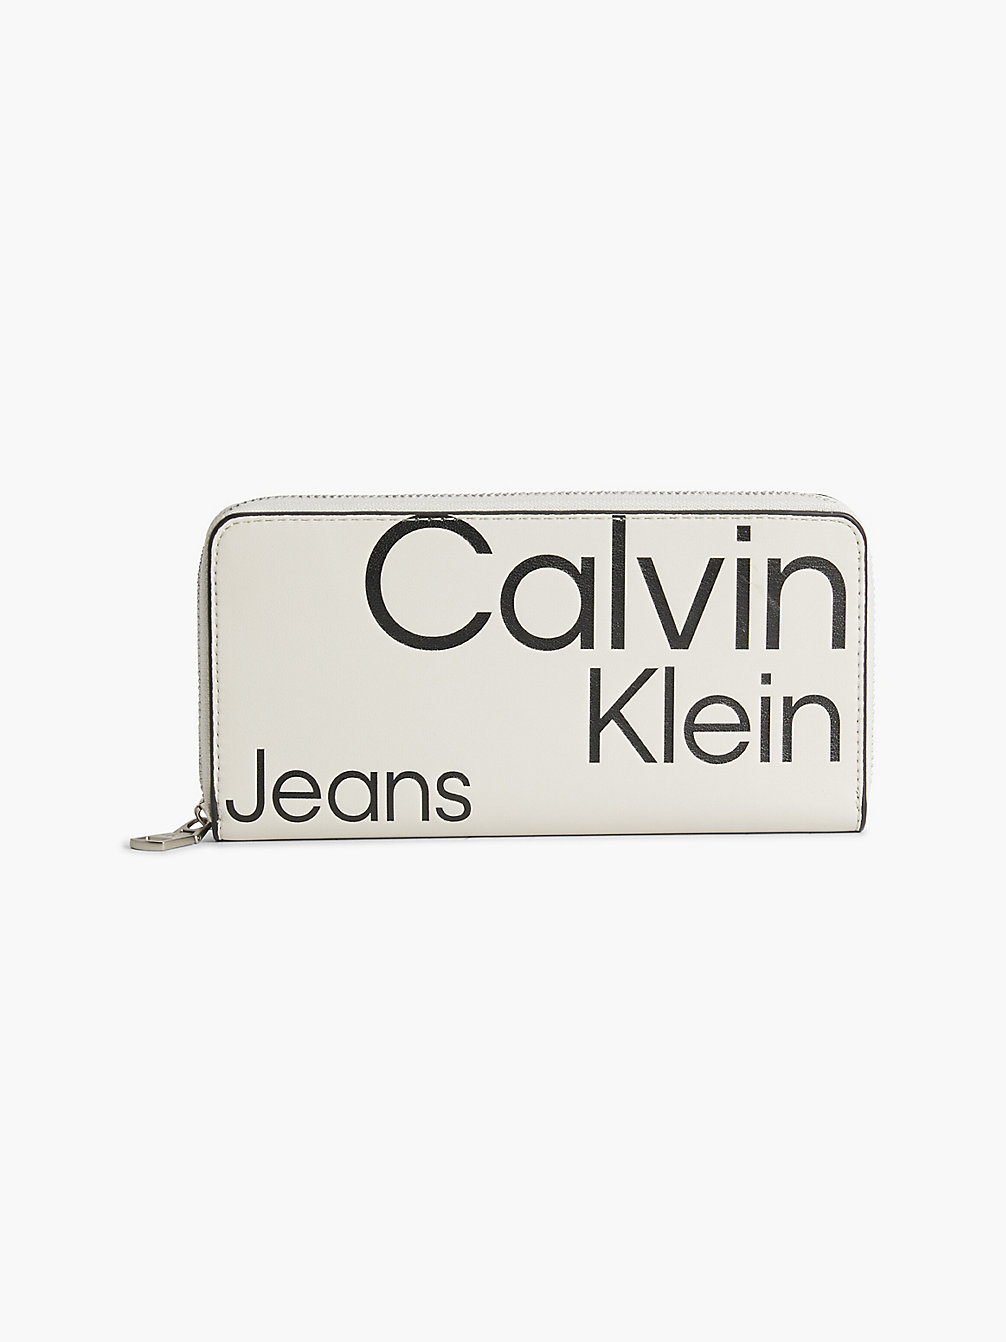 BEIGE AOP > Кошелек на круговой молнии с логотипом с защитой Rfid > undefined Женщины - Calvin Klein